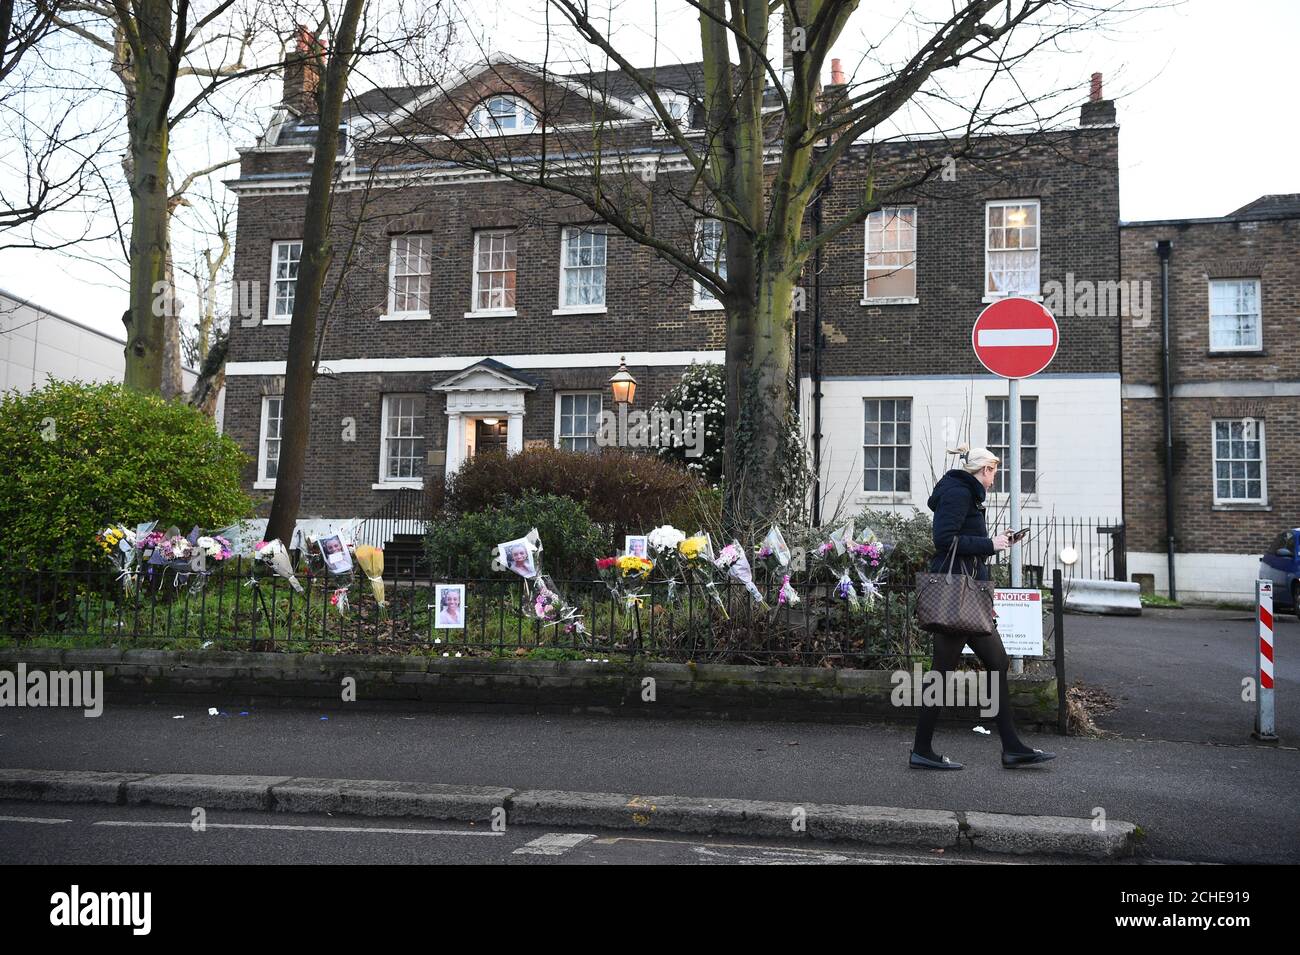 Eine Frau geht an floralen Andenken an der Szene in der Forest Road im Osten Londons vorbei, wo eine 21-jährige Frau starb, nachdem sie von einem Polizeiauto getroffen wurde, das auf einen Anruf vom 999. September reagiert hatte. Stockfoto